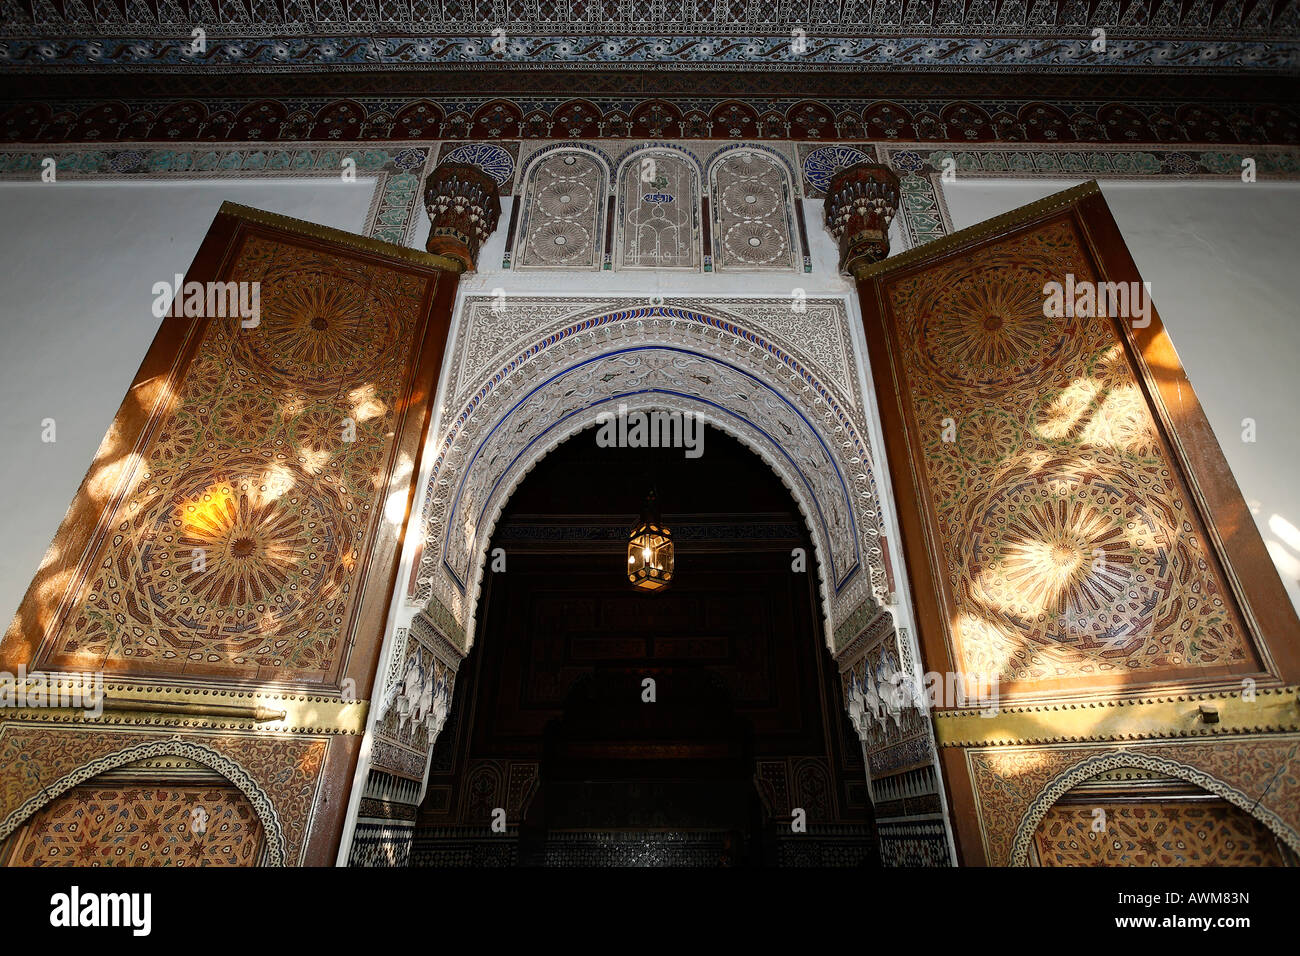 Ingresso alla sala di ricevimento del sultano, Palais de la Bahia, Medina, Marrakech, Marocco, Africa Foto Stock